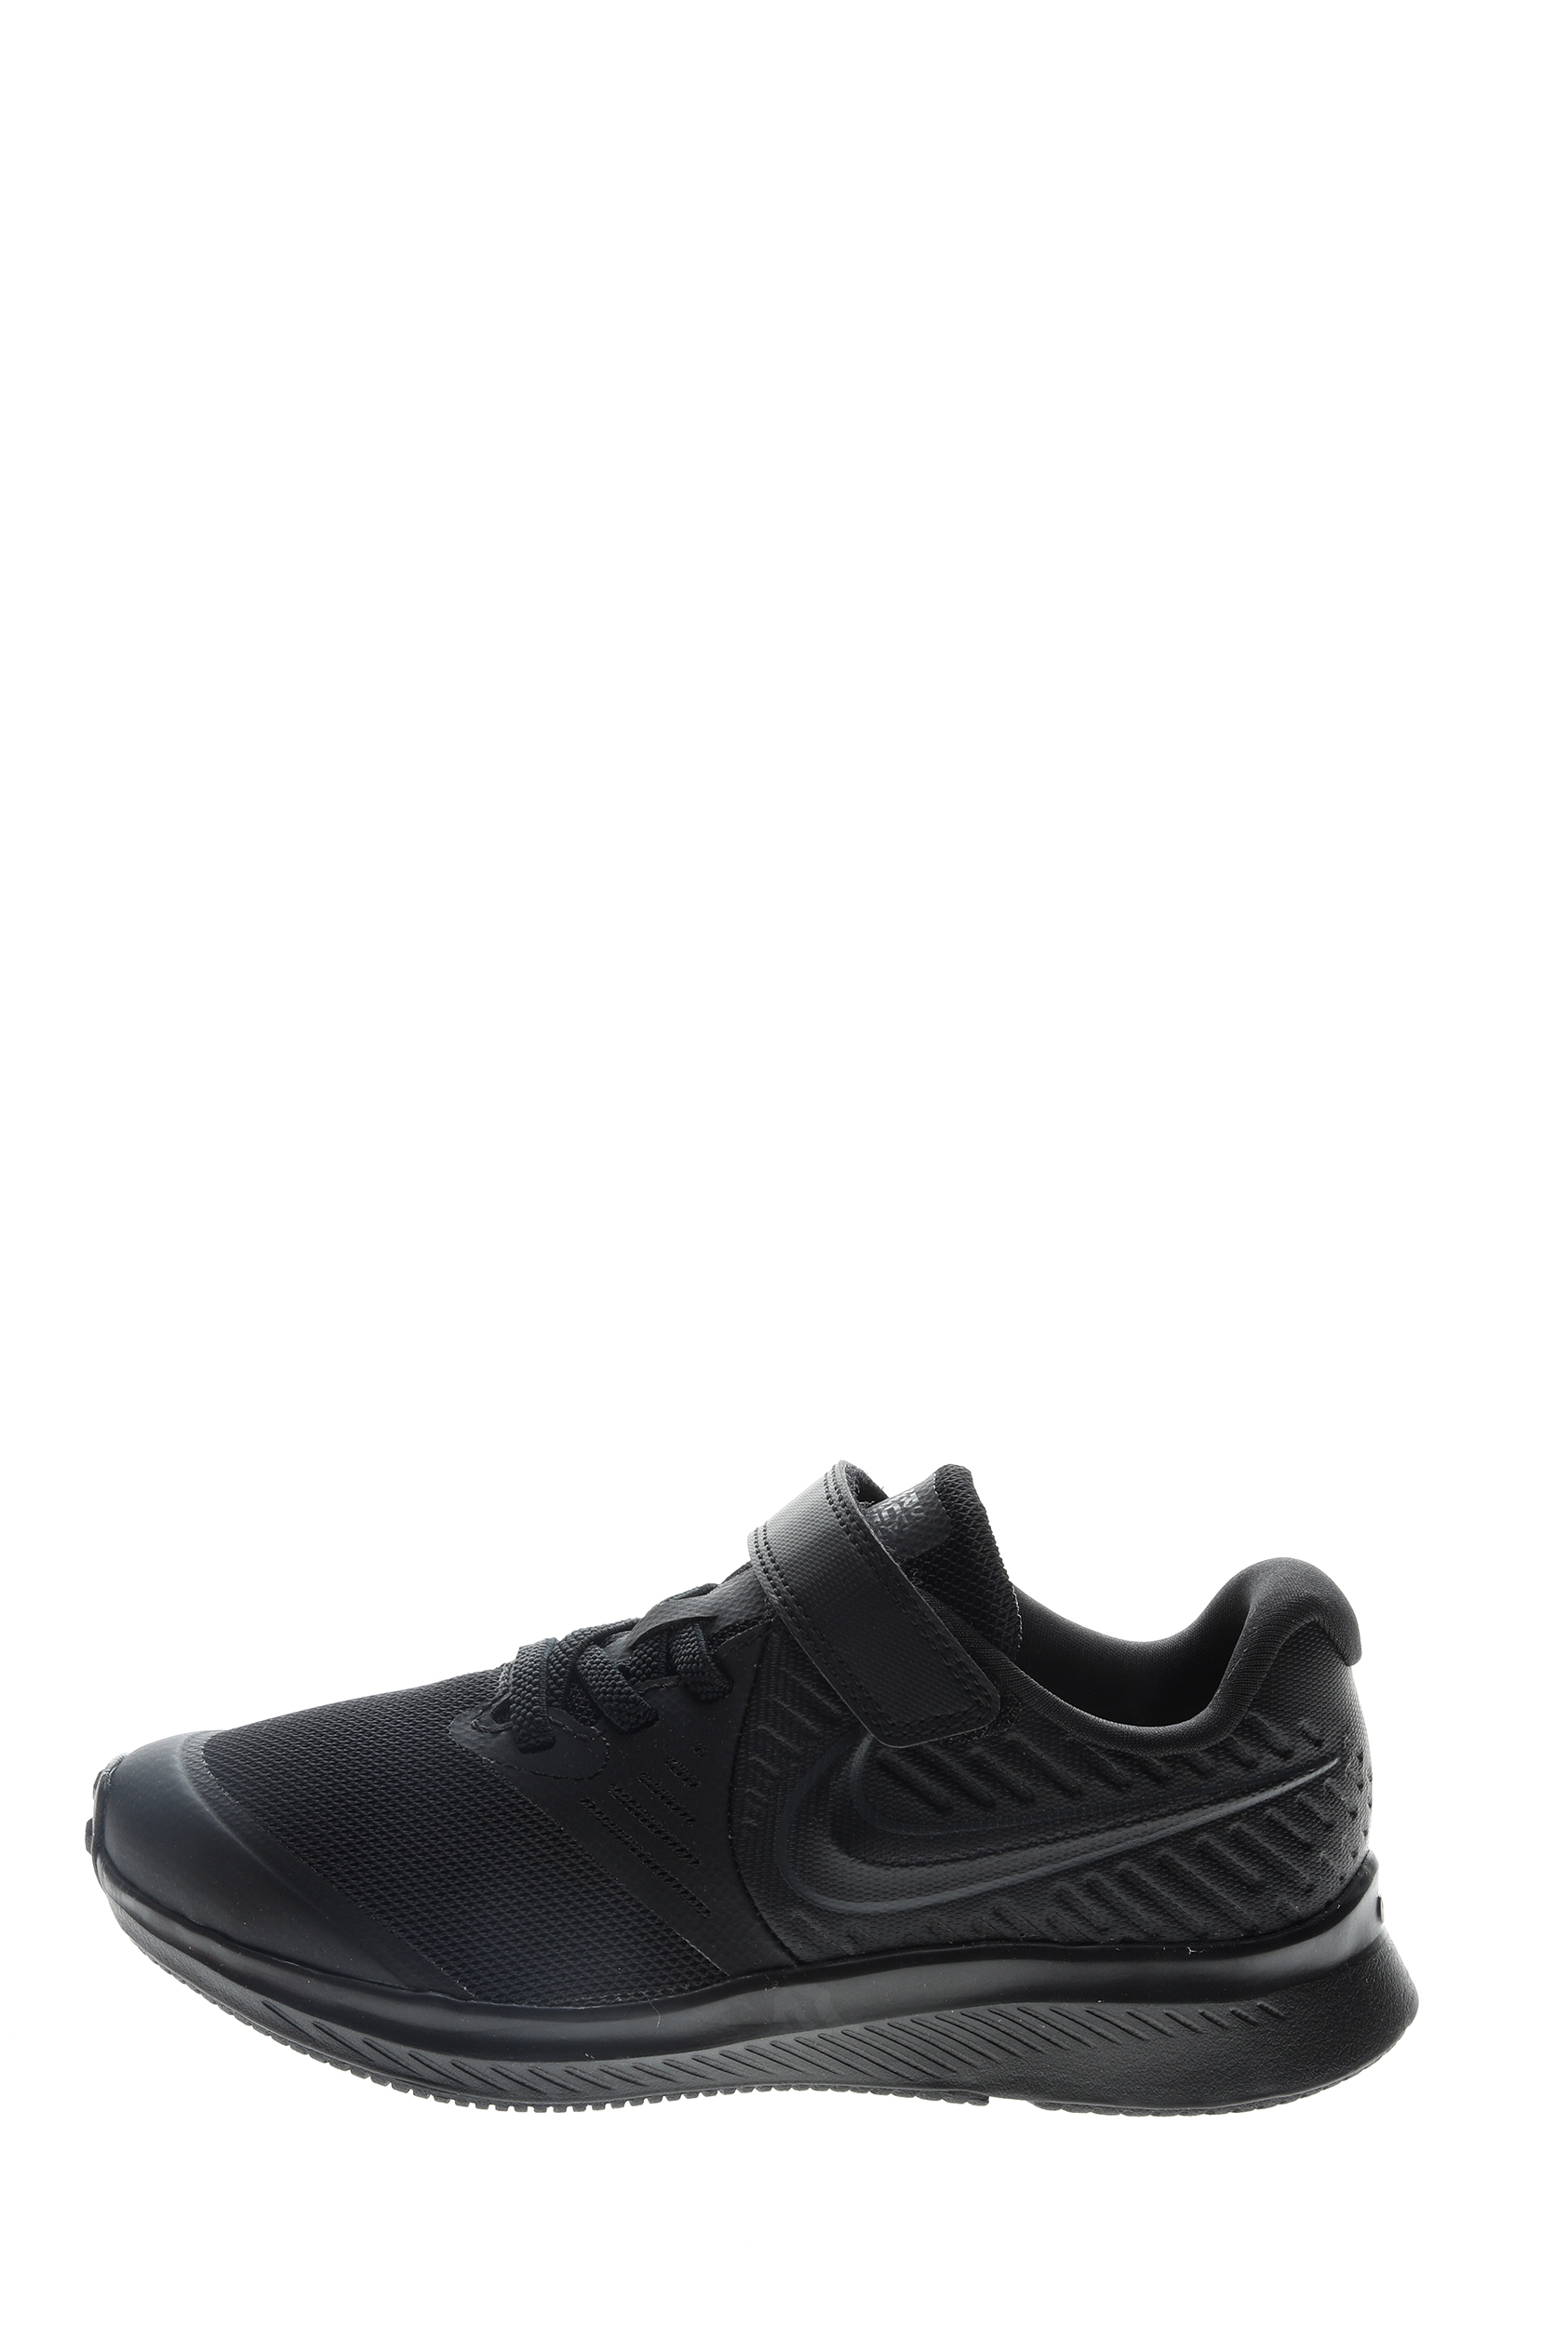 NIKE – Παιδικά παπούτσια running NIKE STAR RUNNER 2 (PSV) μαύρα 1733269.1-7180